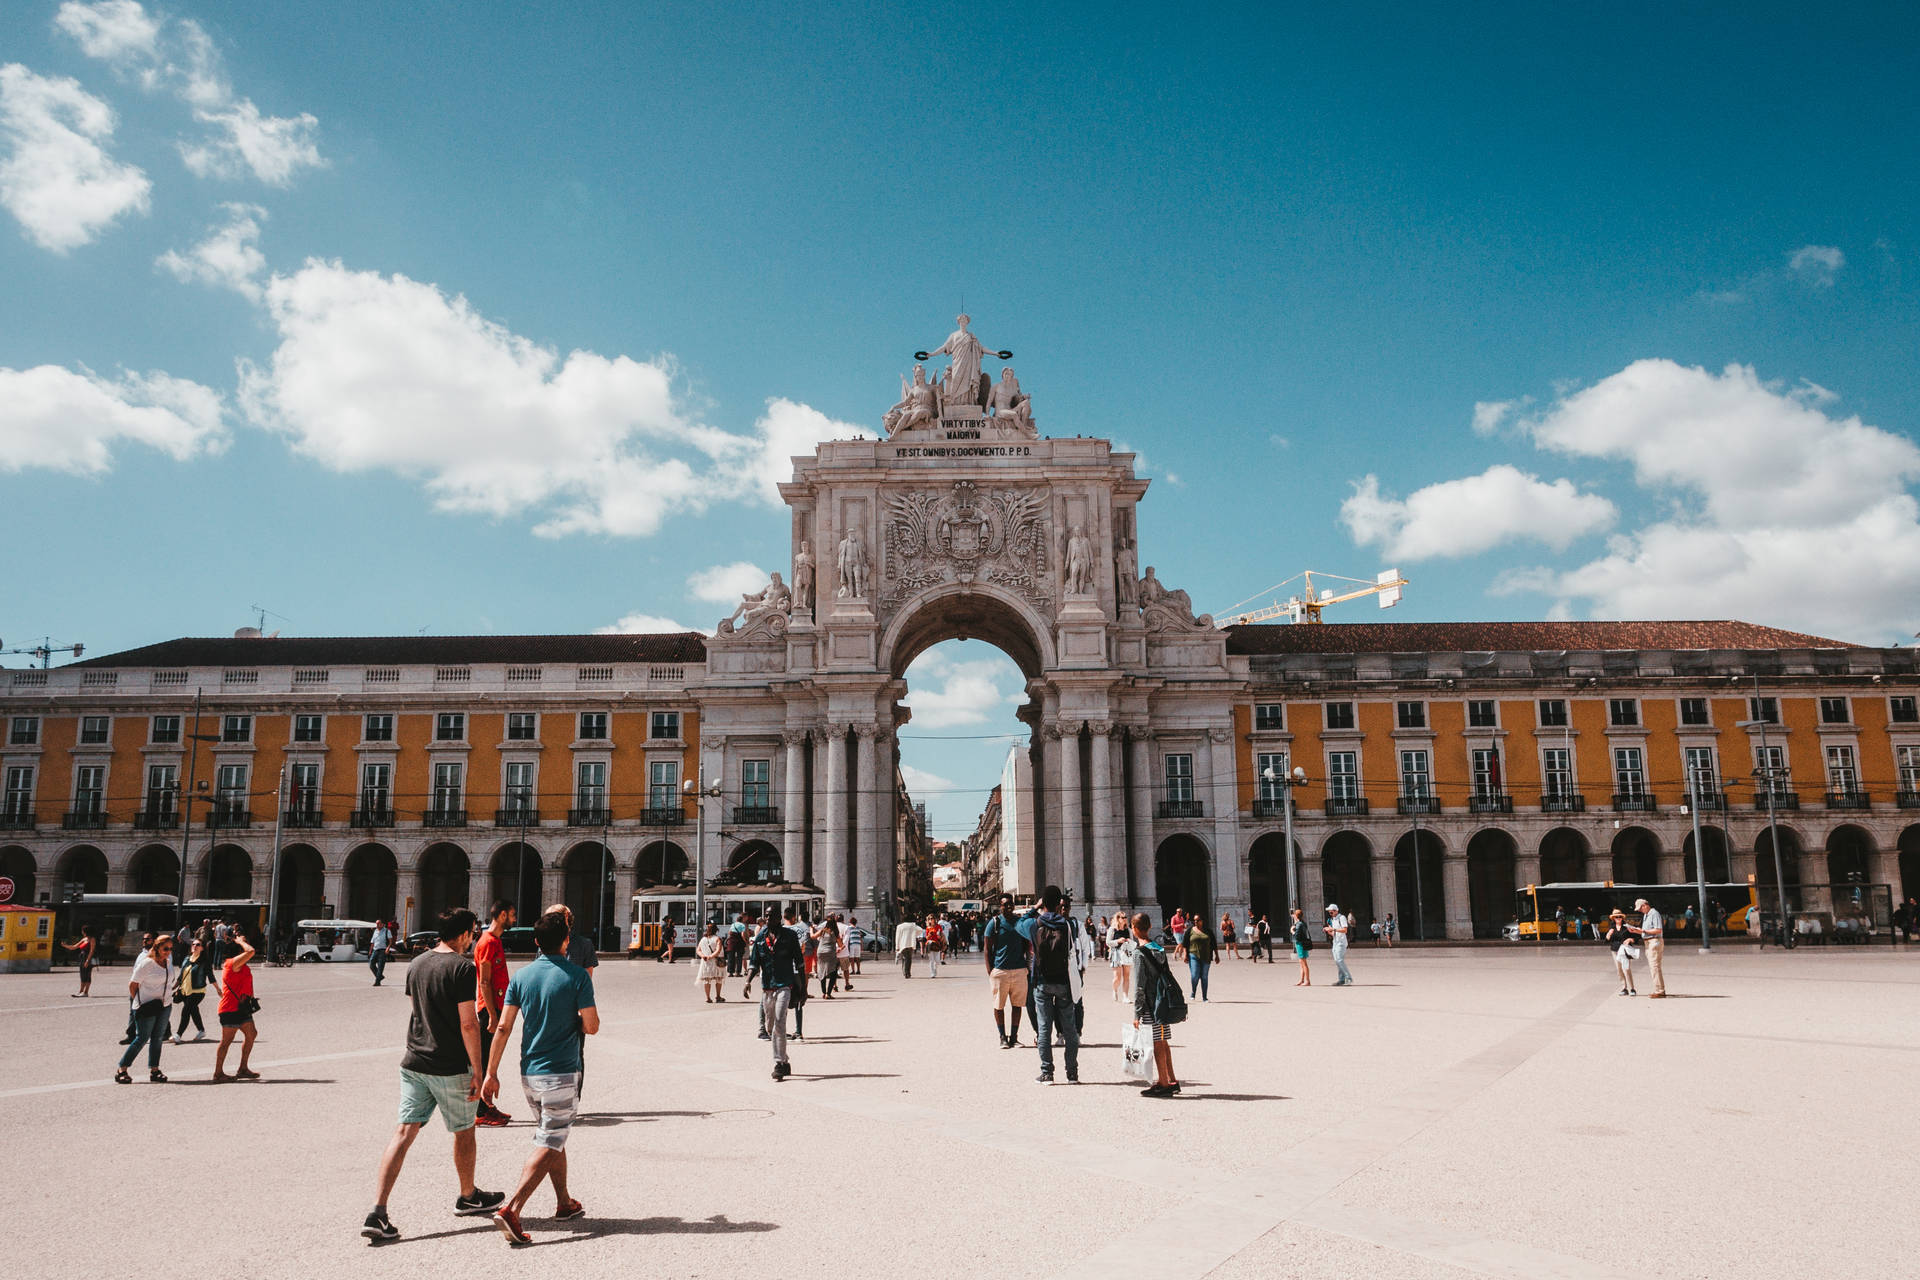 Diepraca Do Comercio Ist Ein Beliebtes Reiseziel In Portugal Mit Einem Wunderschönen Platz Und Einer Beeindruckenden Architektur. Wallpaper